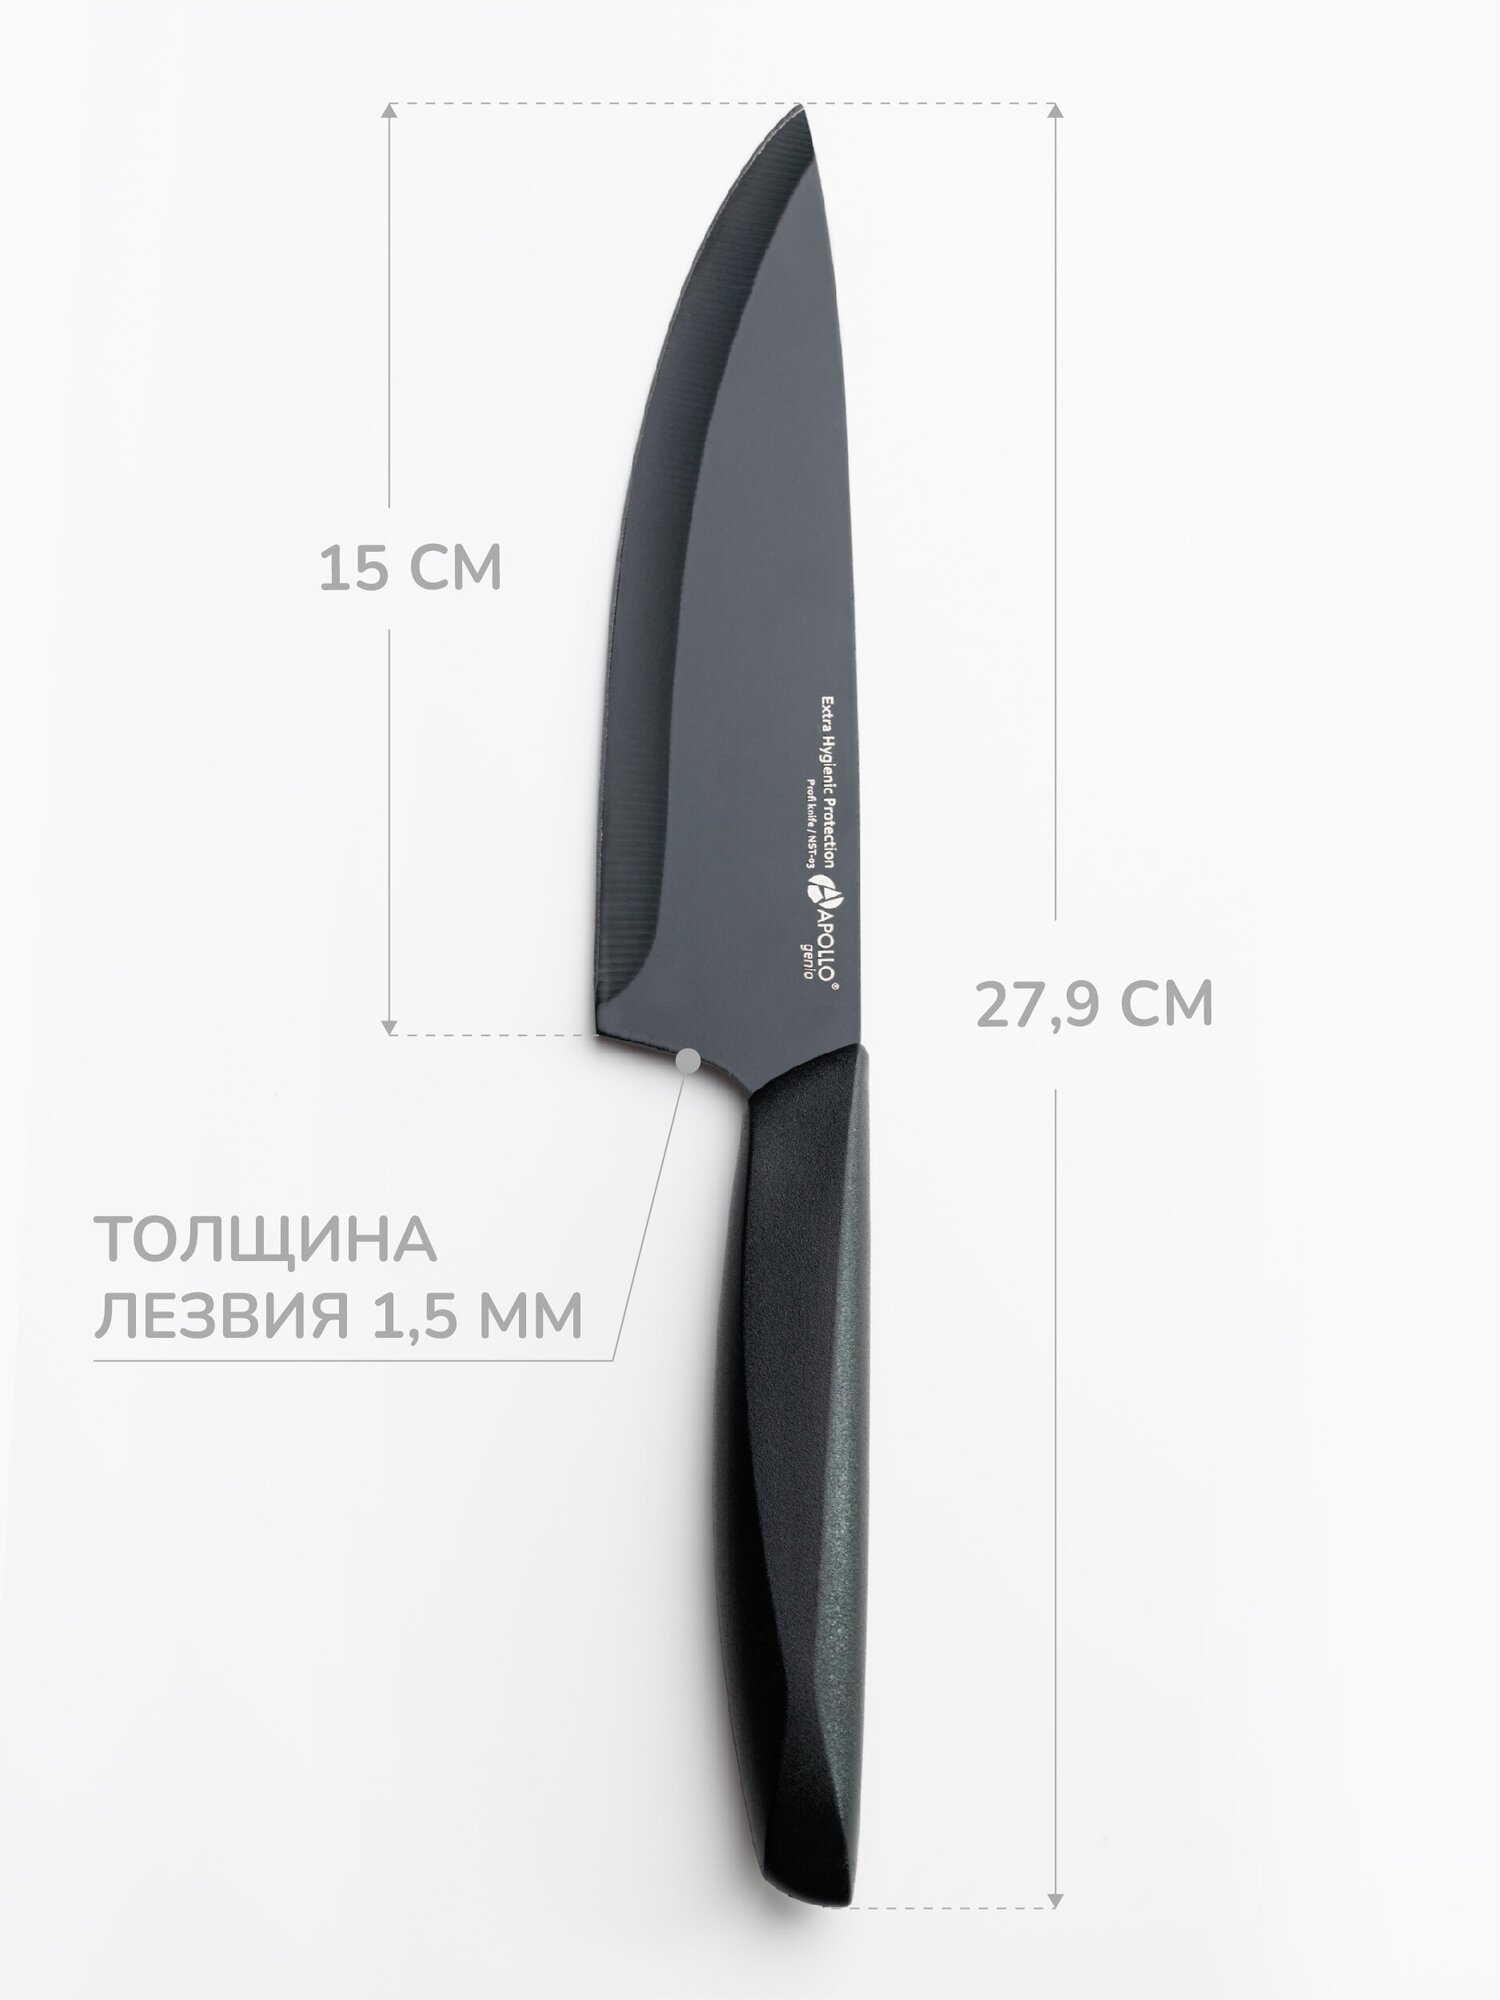 нож APOLLO Genio Nero Steel 18см для мяса нерж.сталь с антибакт.покр., пластик - фото №4